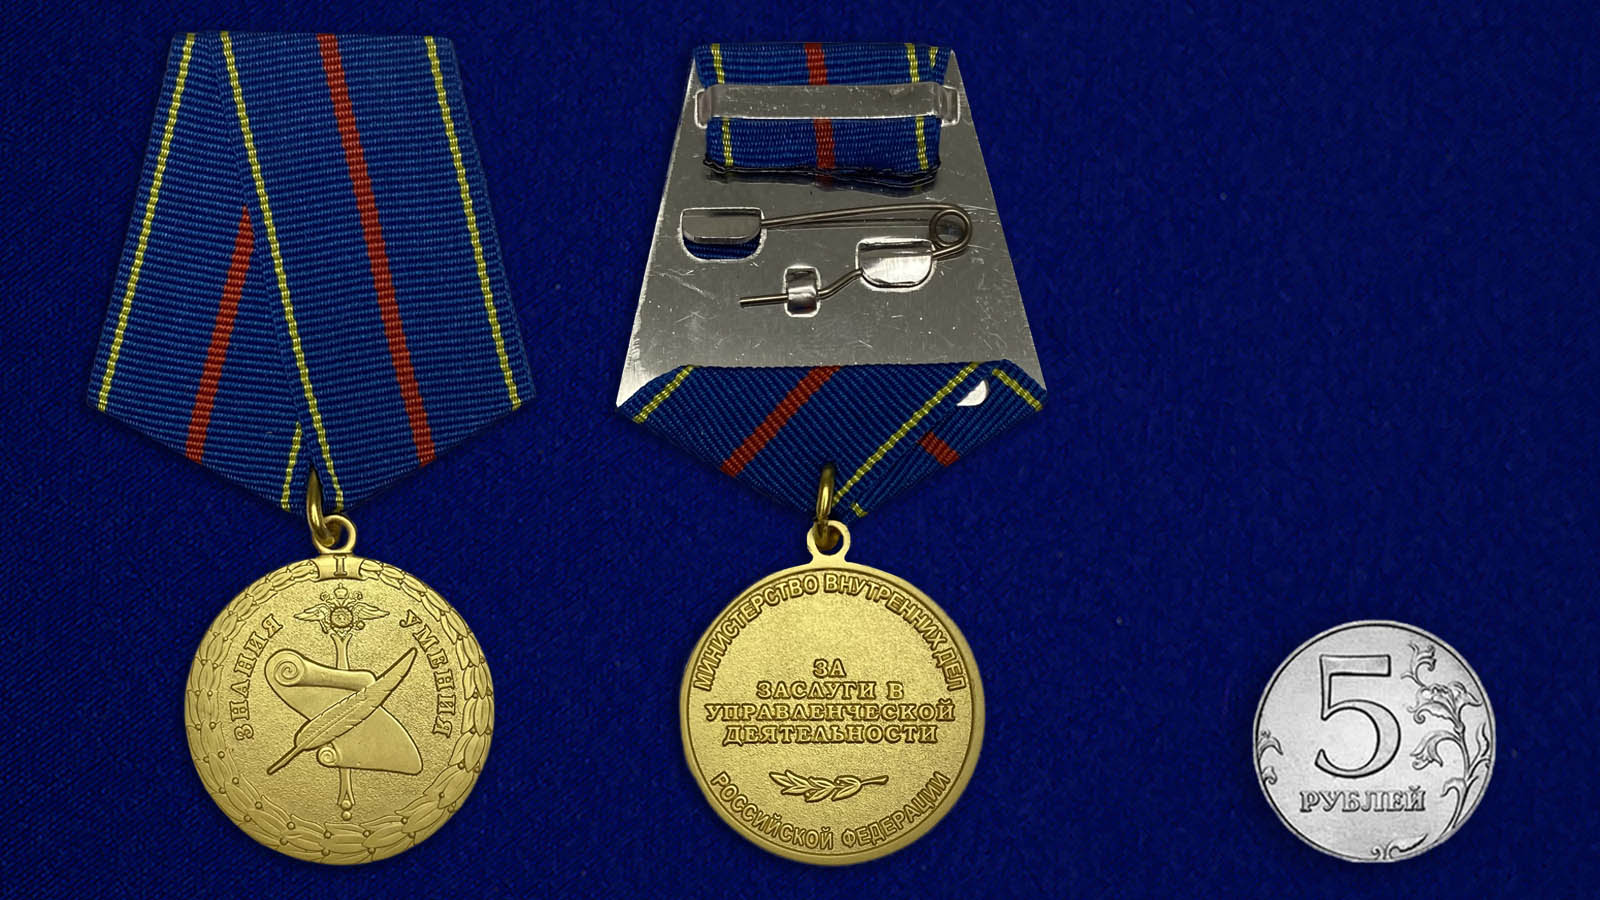 Купить медаль За заслуги в управленческой деятельности МВД РФ 1 степени на подставке в подарок